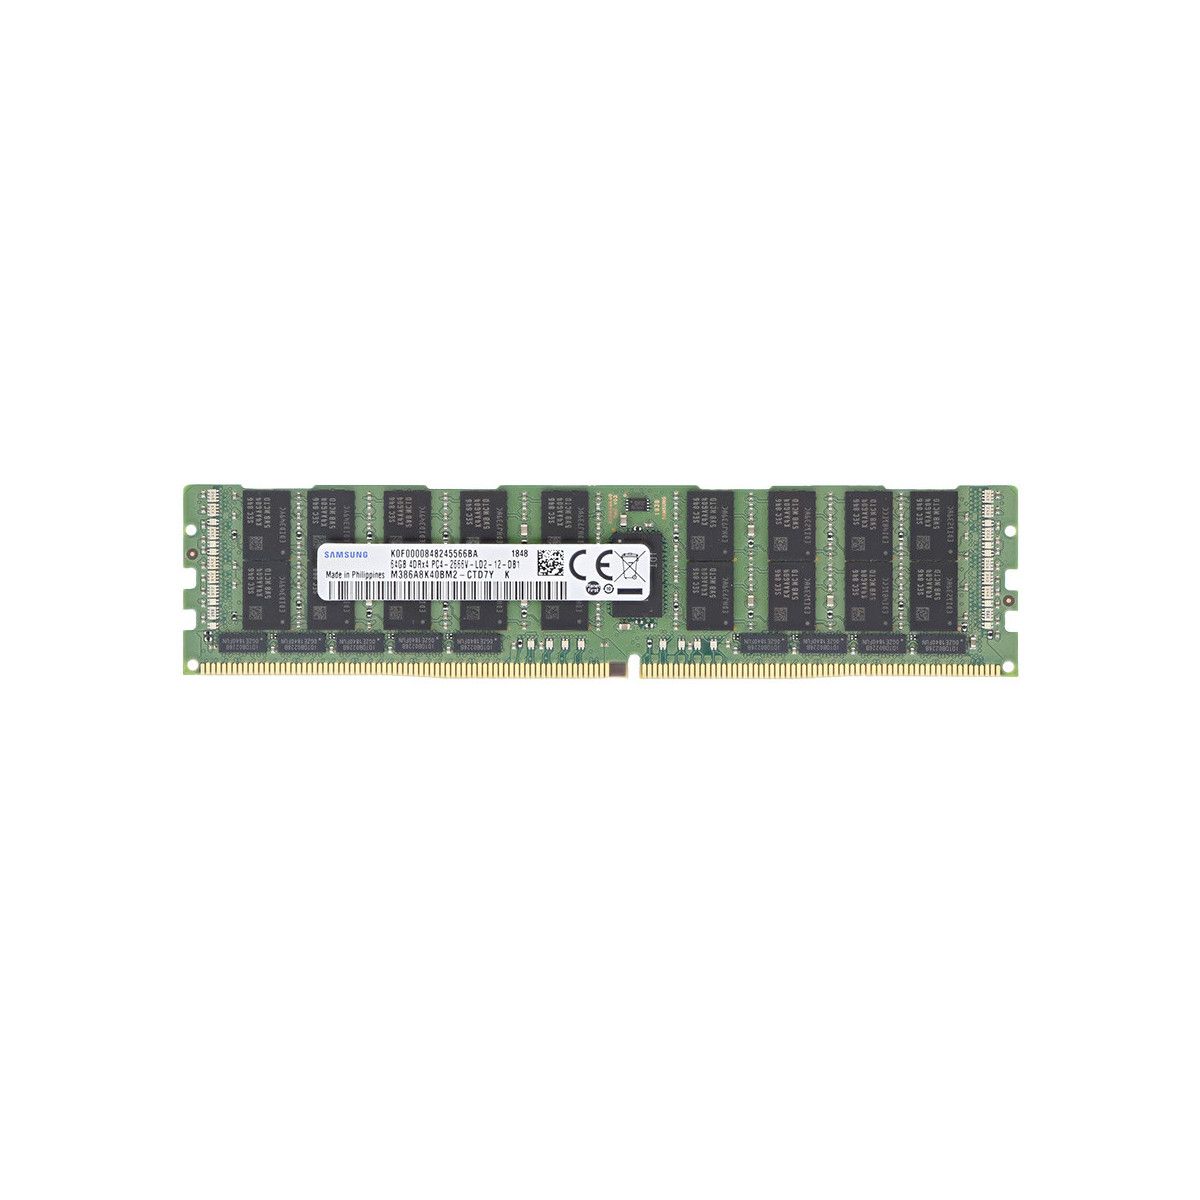 815101-B21-MS - Mem-Star 1x 64GB DDR4-2666 LRDIMM PC4-21300V-L - Mem-Star Compatibile OEM Memoria 1 - Memstar 